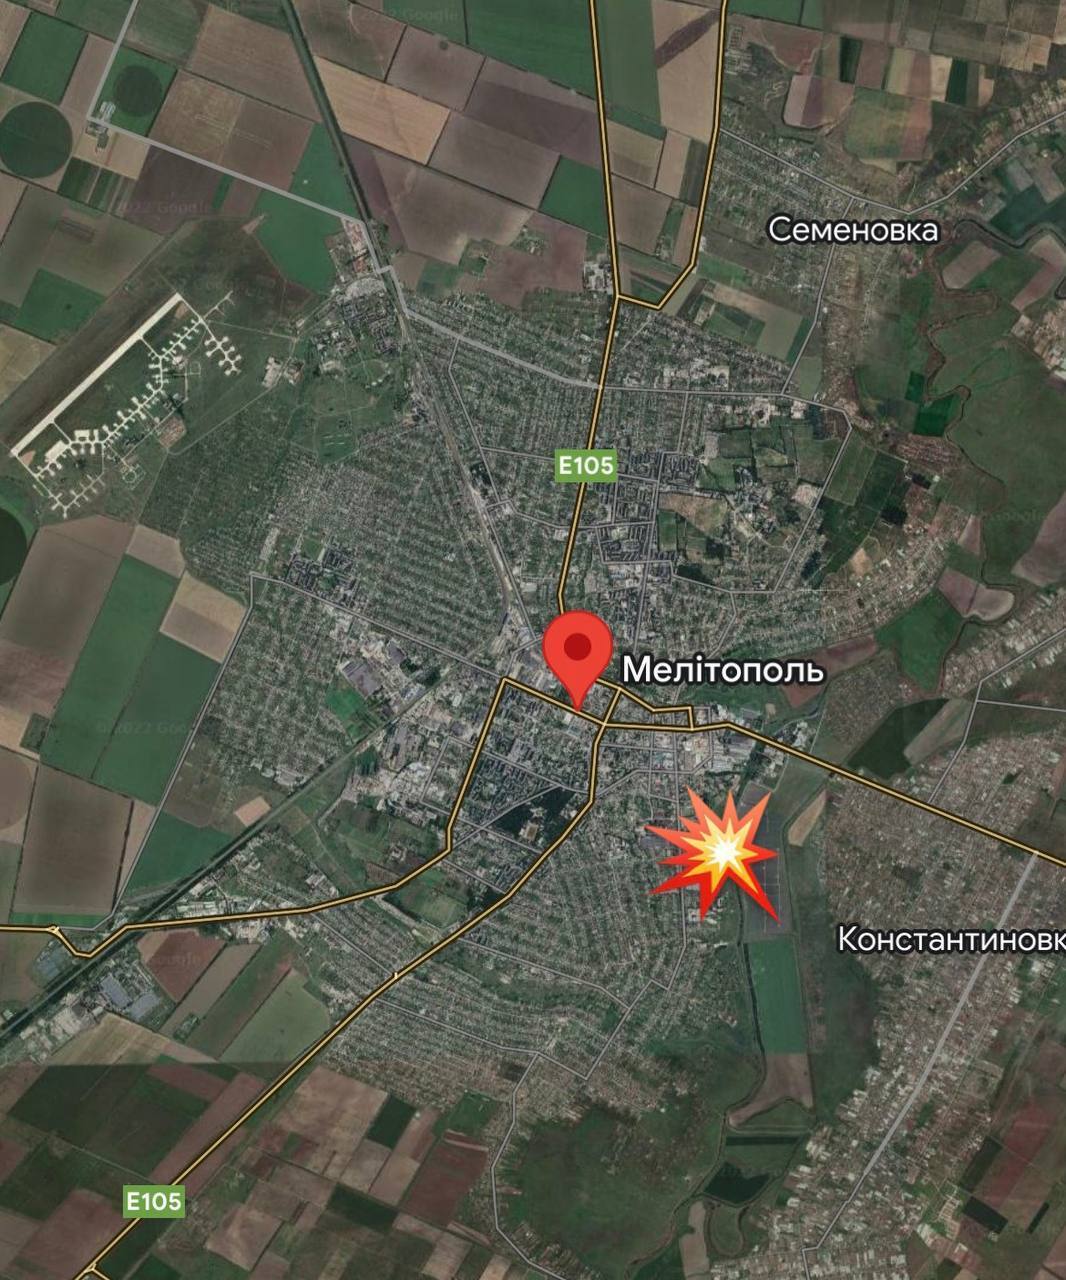 "Уламки розліталися на два квартали": ЗСУ завдали потужного удару по окупантах у Мелітополі, спливли деталі. Фото